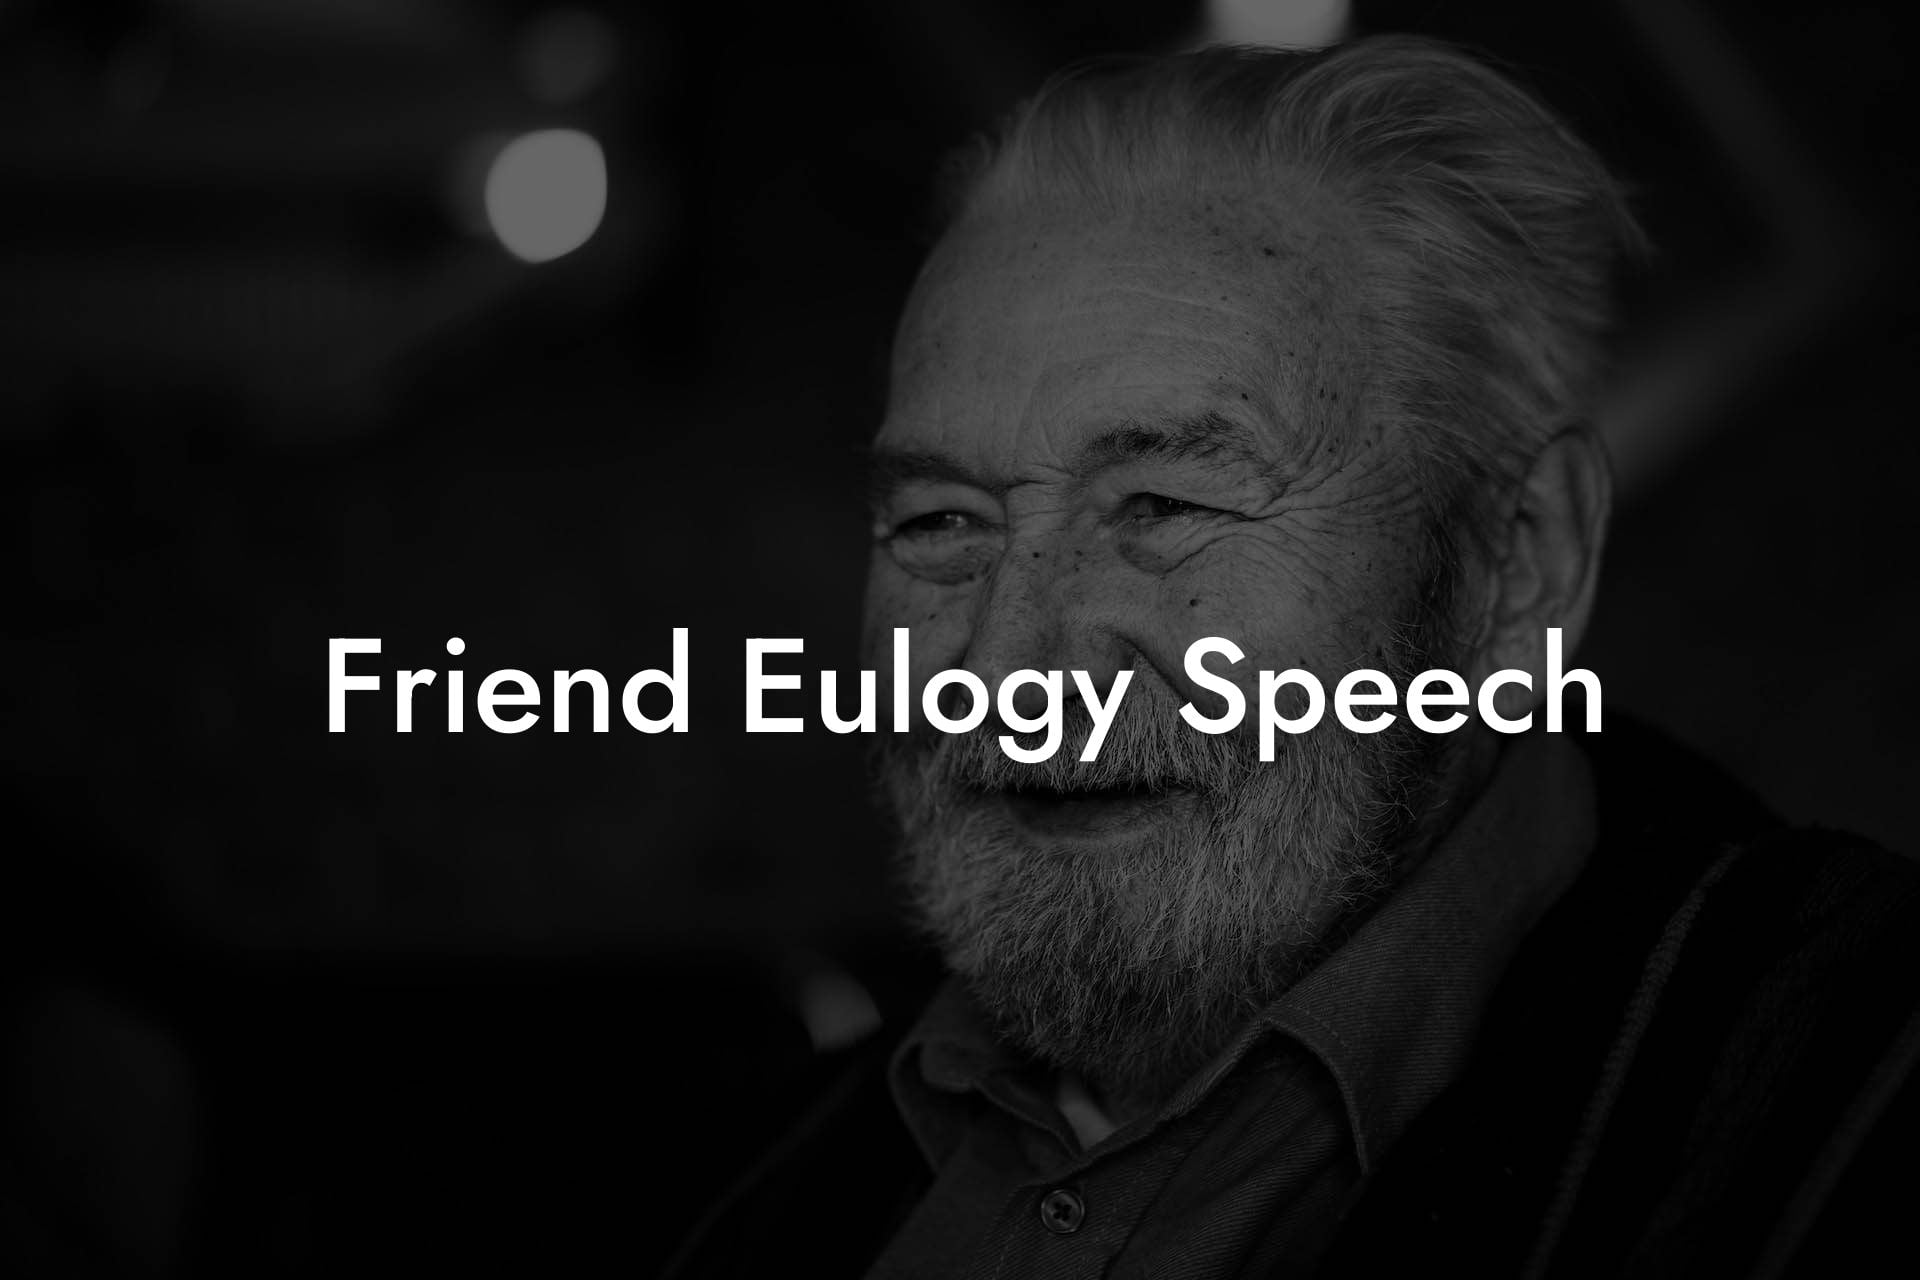 Friend Eulogy Speech